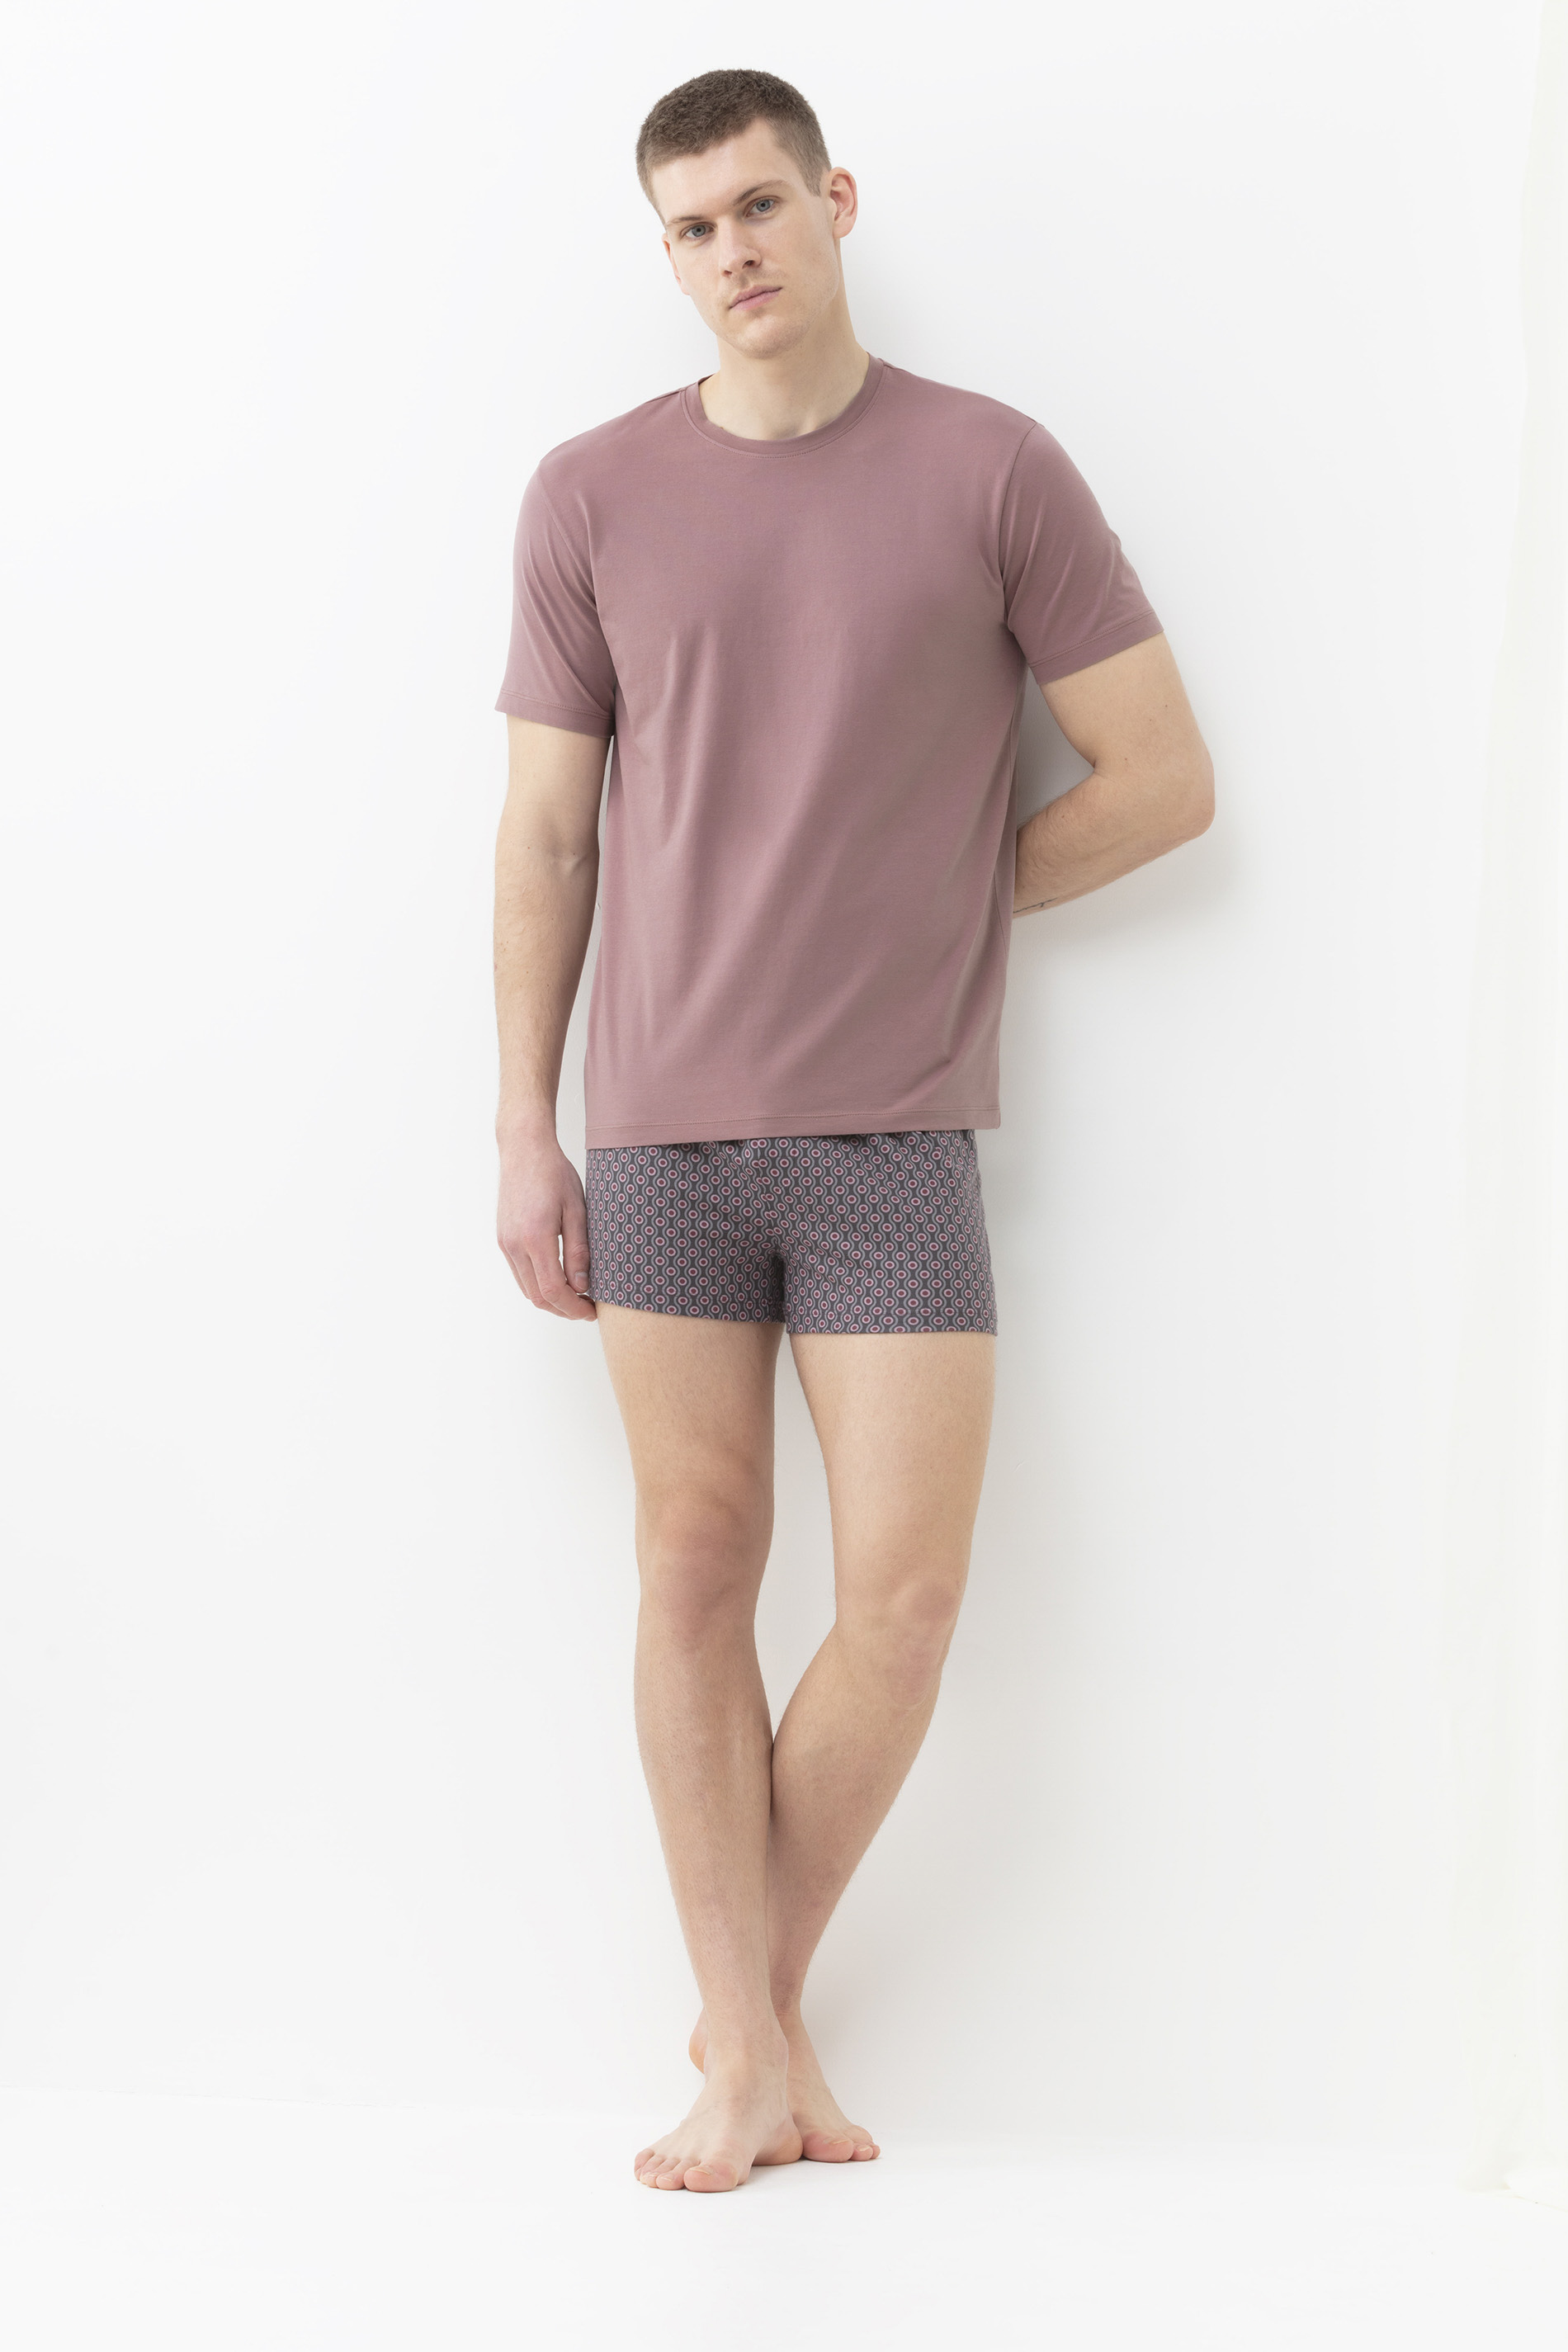 T-Shirt Blush Powder Serie Relax Festlegen | mey®